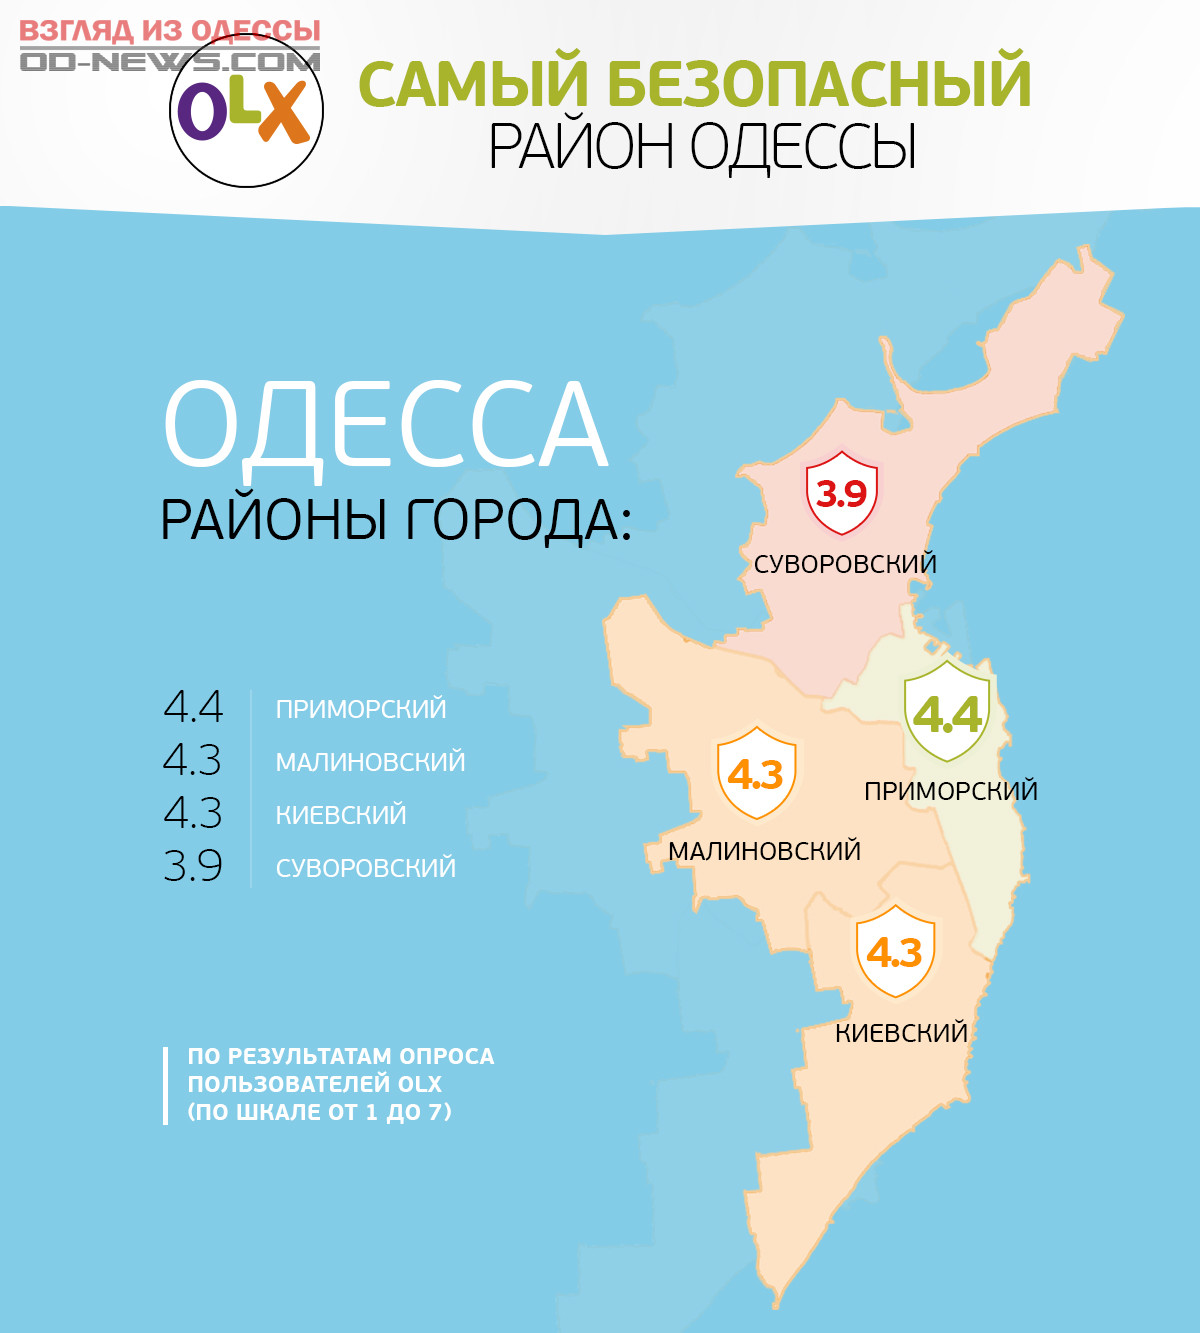 Одесские названия. Одесса районы города. Карта Одессы с районами. Знаменитые районы Одессы. Карта Одессы с районами города.